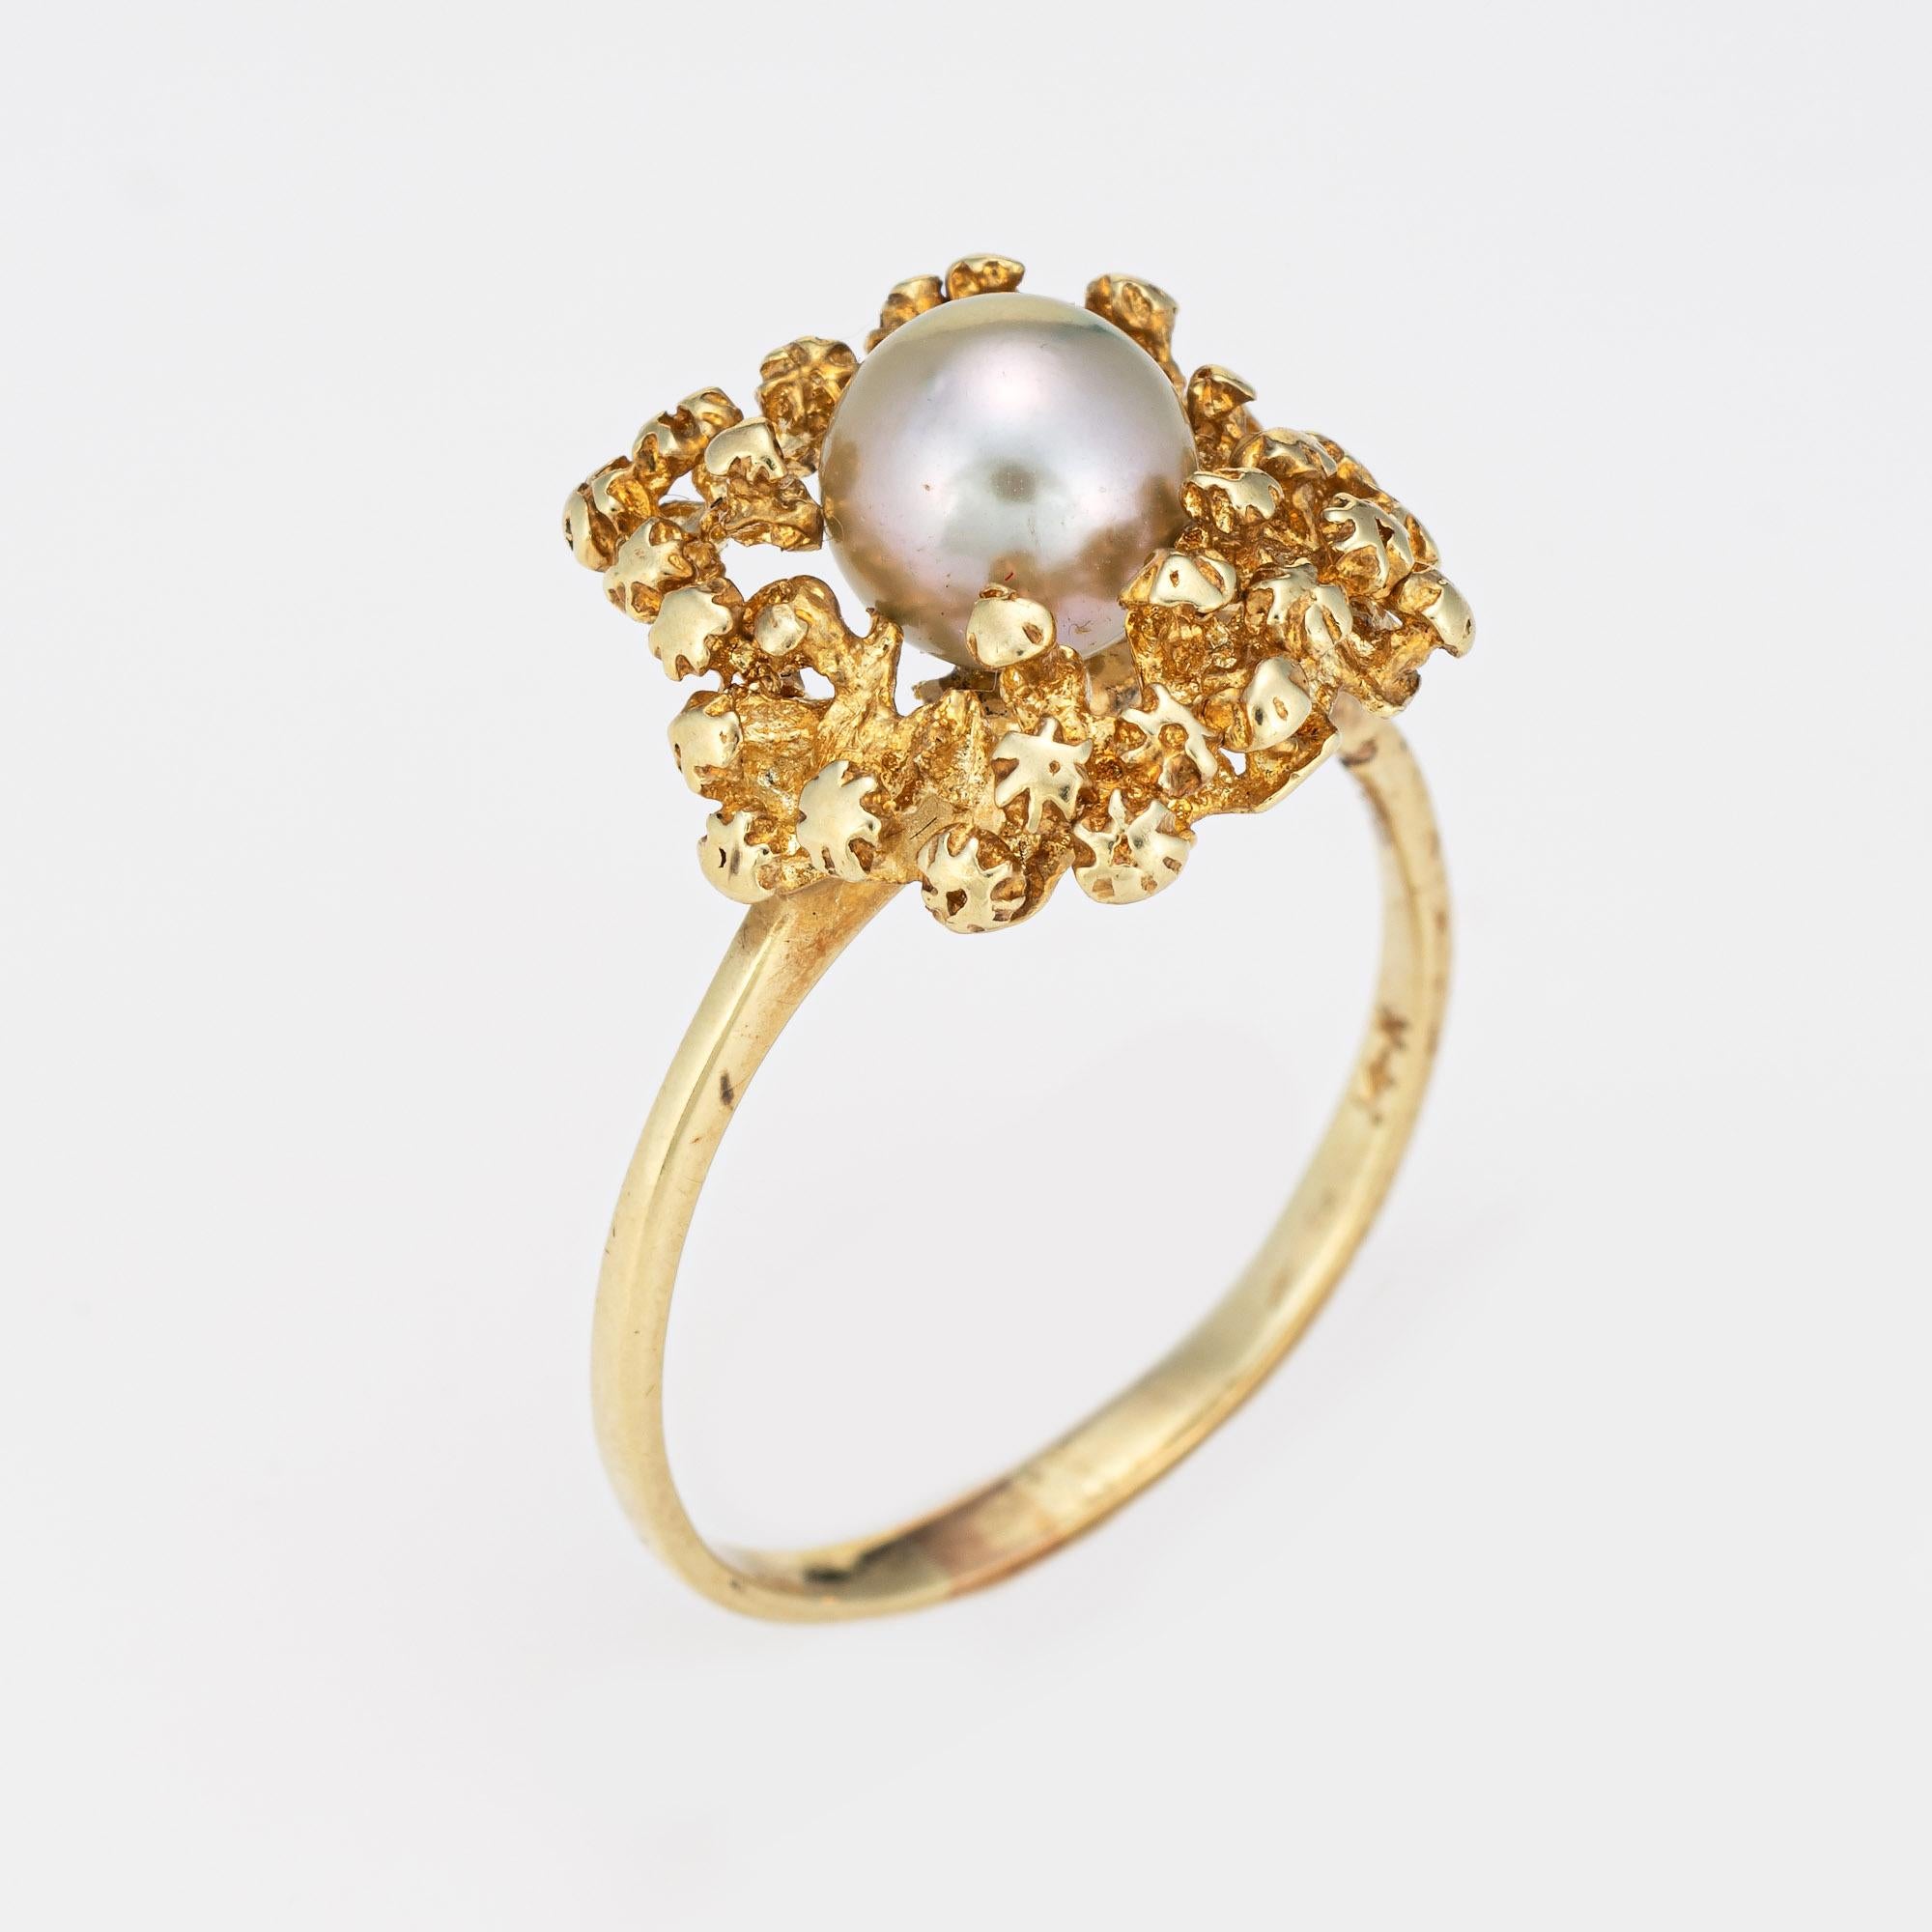 Élégante bague vintage en perles de culture (circa 1970) réalisée en or jaune 14 carats. 

Une perle de culture de 6,5 mm est sertie dans la monture. La perle est de couleur gris argenté clair et présente un bon lustre.  

La perle d'un gris tendre